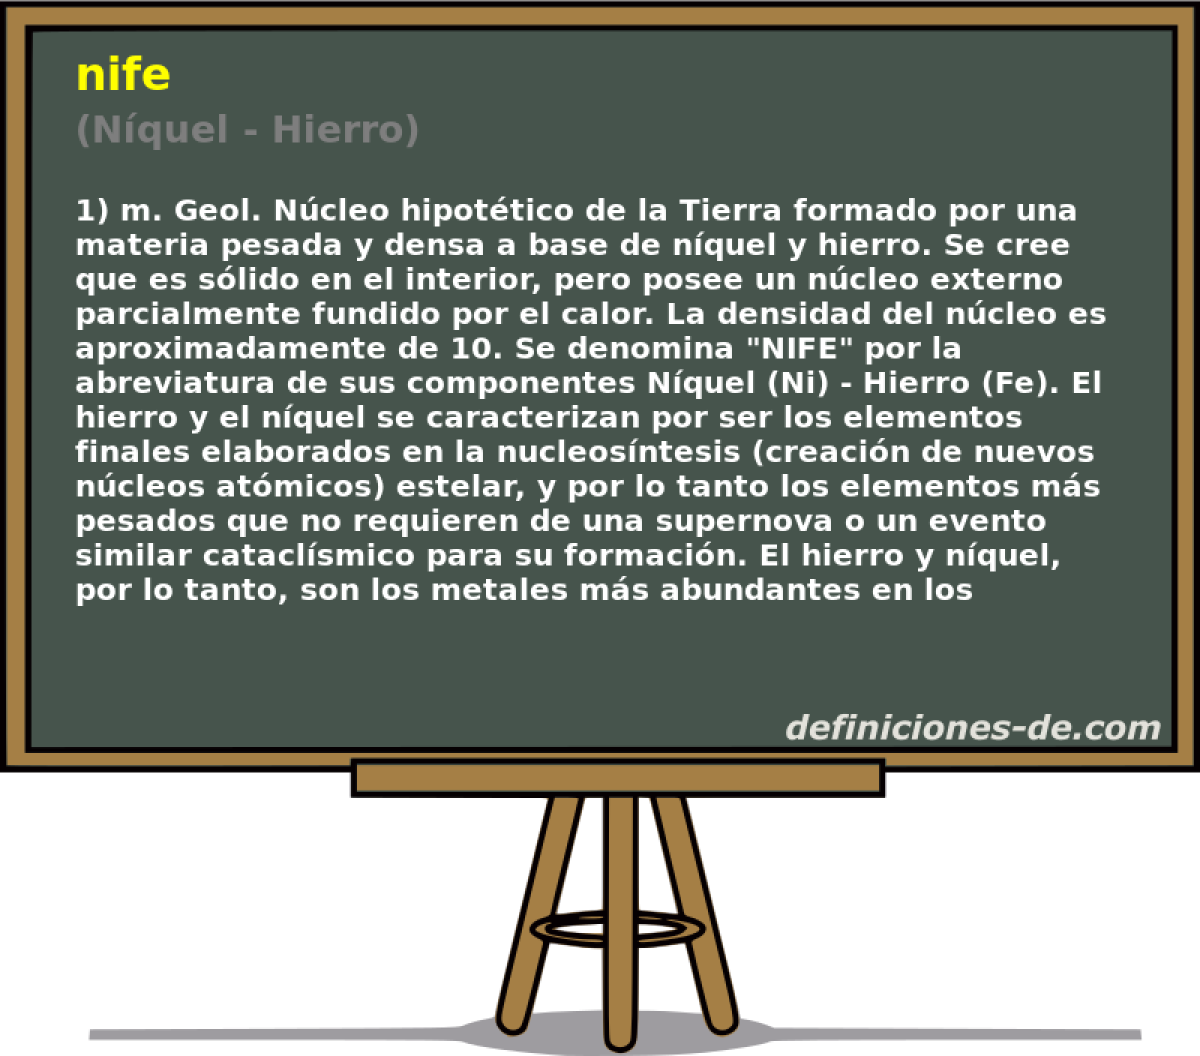 nife (Nquel - Hierro)